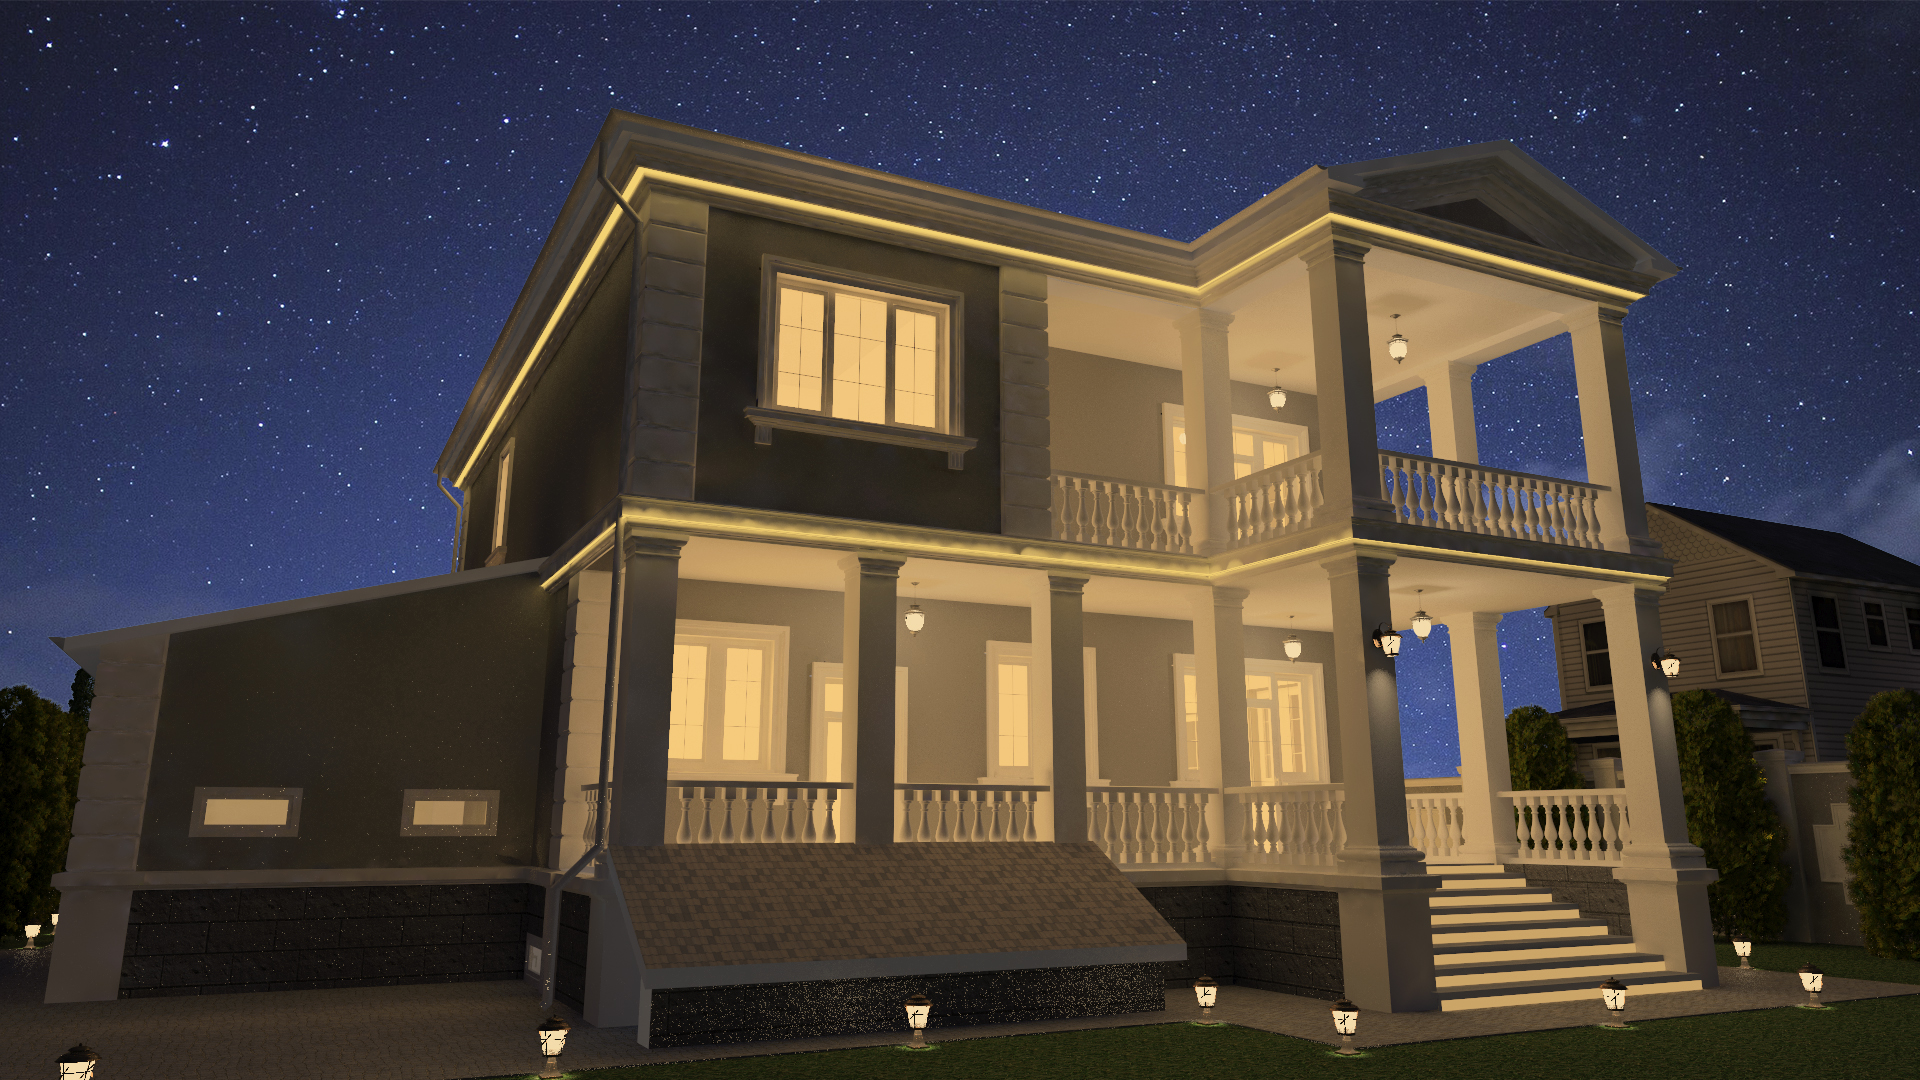 Le projet de la maison dans le style classique dans 3d max vray 3.0 image